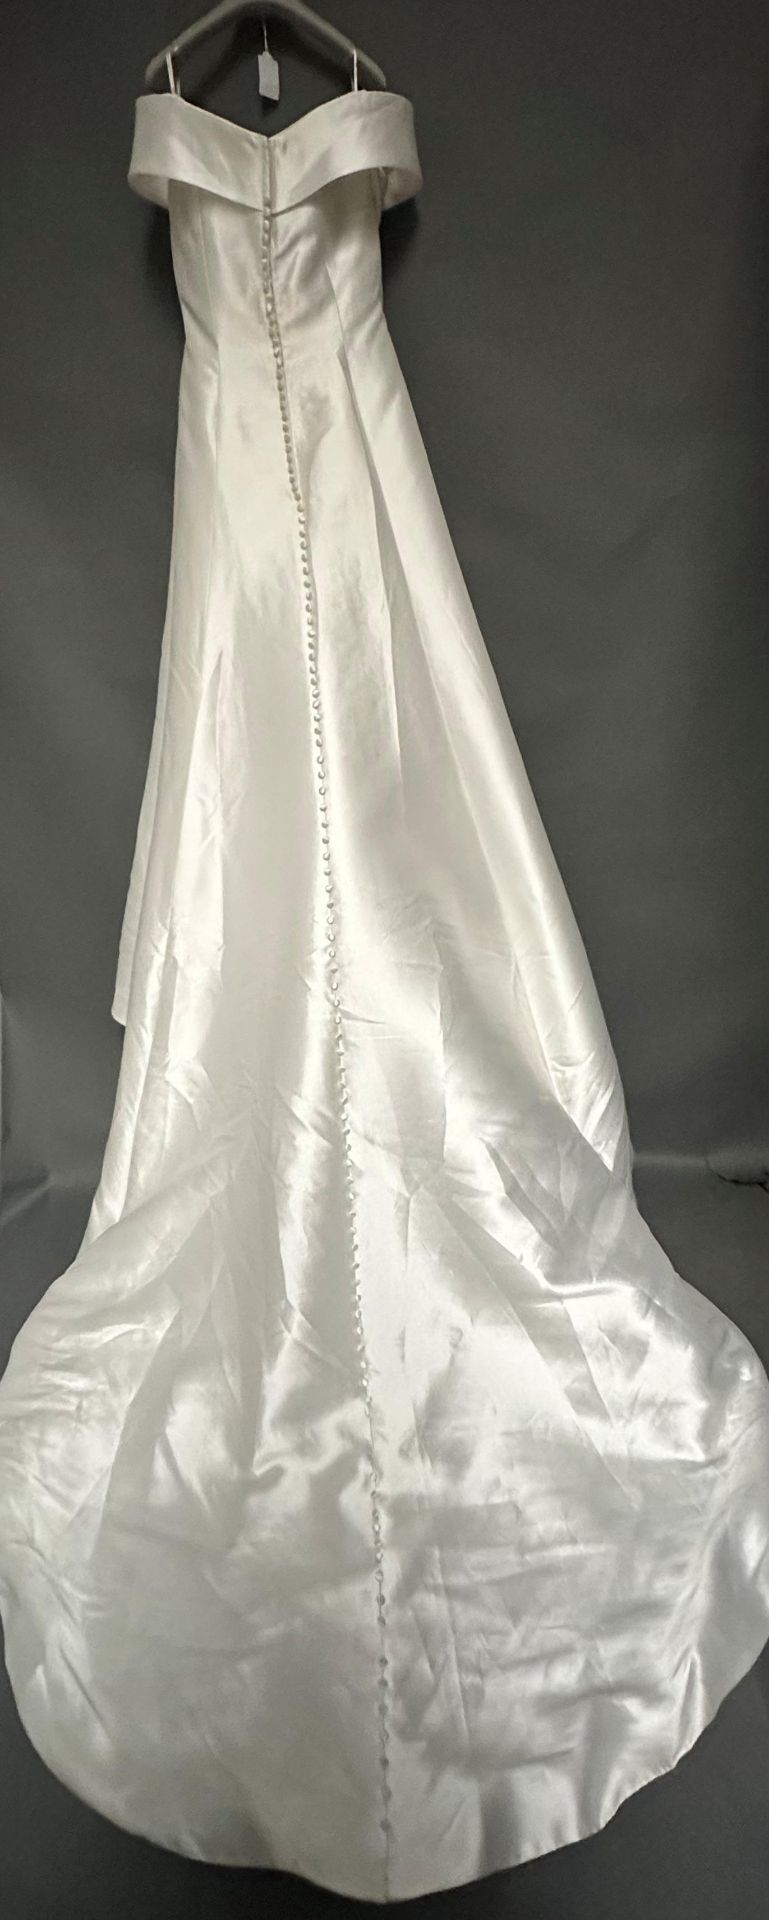 1 x REBECCA INGRAM Off The Shoulder Empire Designer Wedding Dress Bridal Gown, RRP £1,500 UK 10 - Image 3 of 5